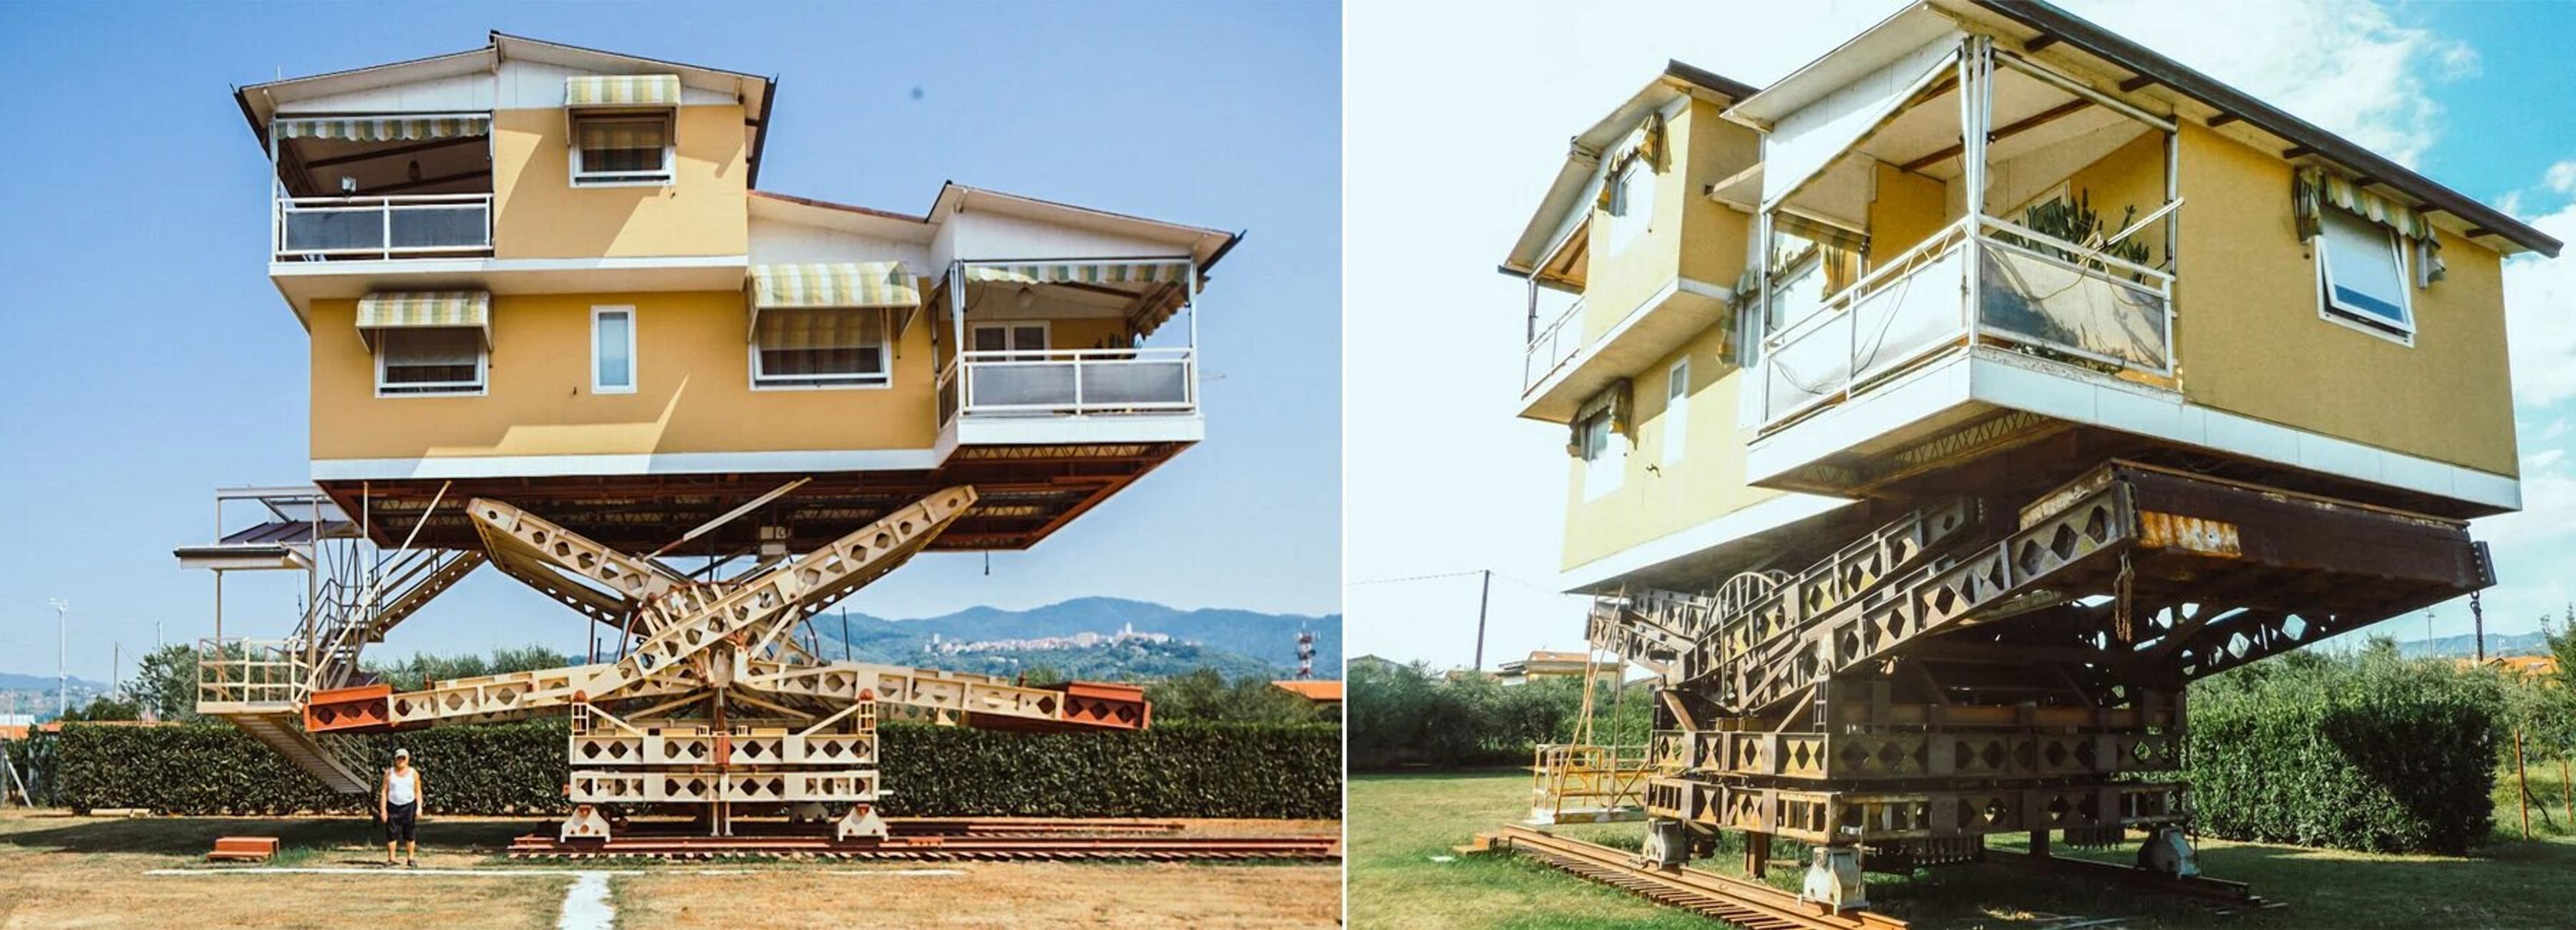 Дім, що витає у повітрі: як виглядає летючий будинок в Італії 
